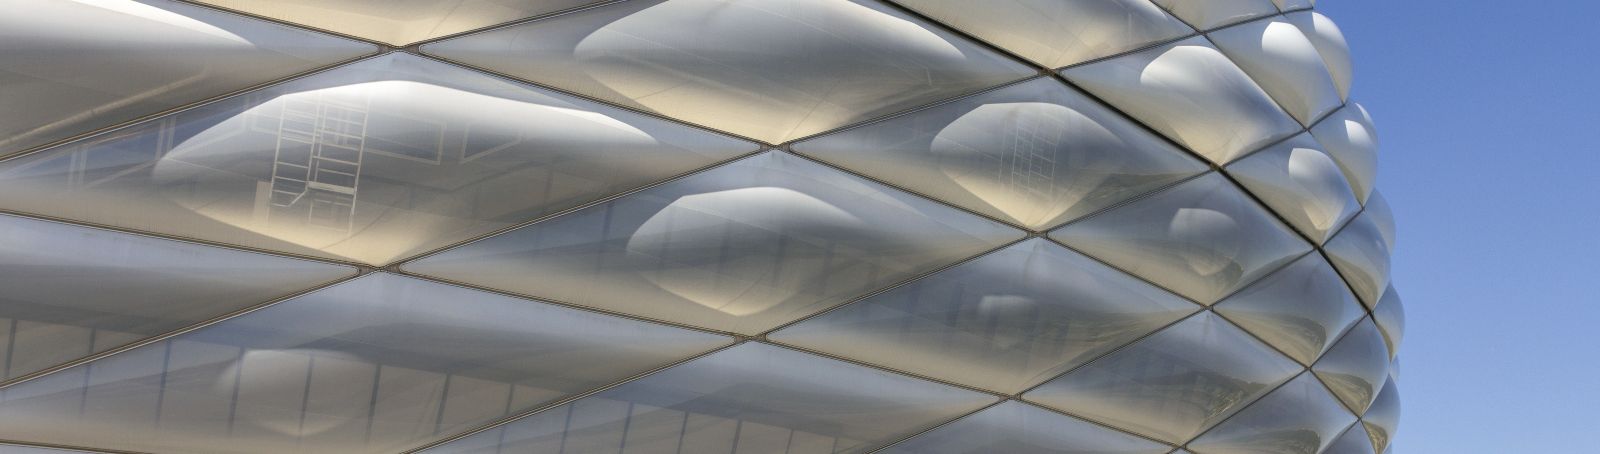 Folienarchitektur ist vor allem bei großen Gebäuden beliebt: Die hier zu sehende Allianzarena in München hat eine Membranfassade aus Folienkissen, die das Stadion komplett umspannt.